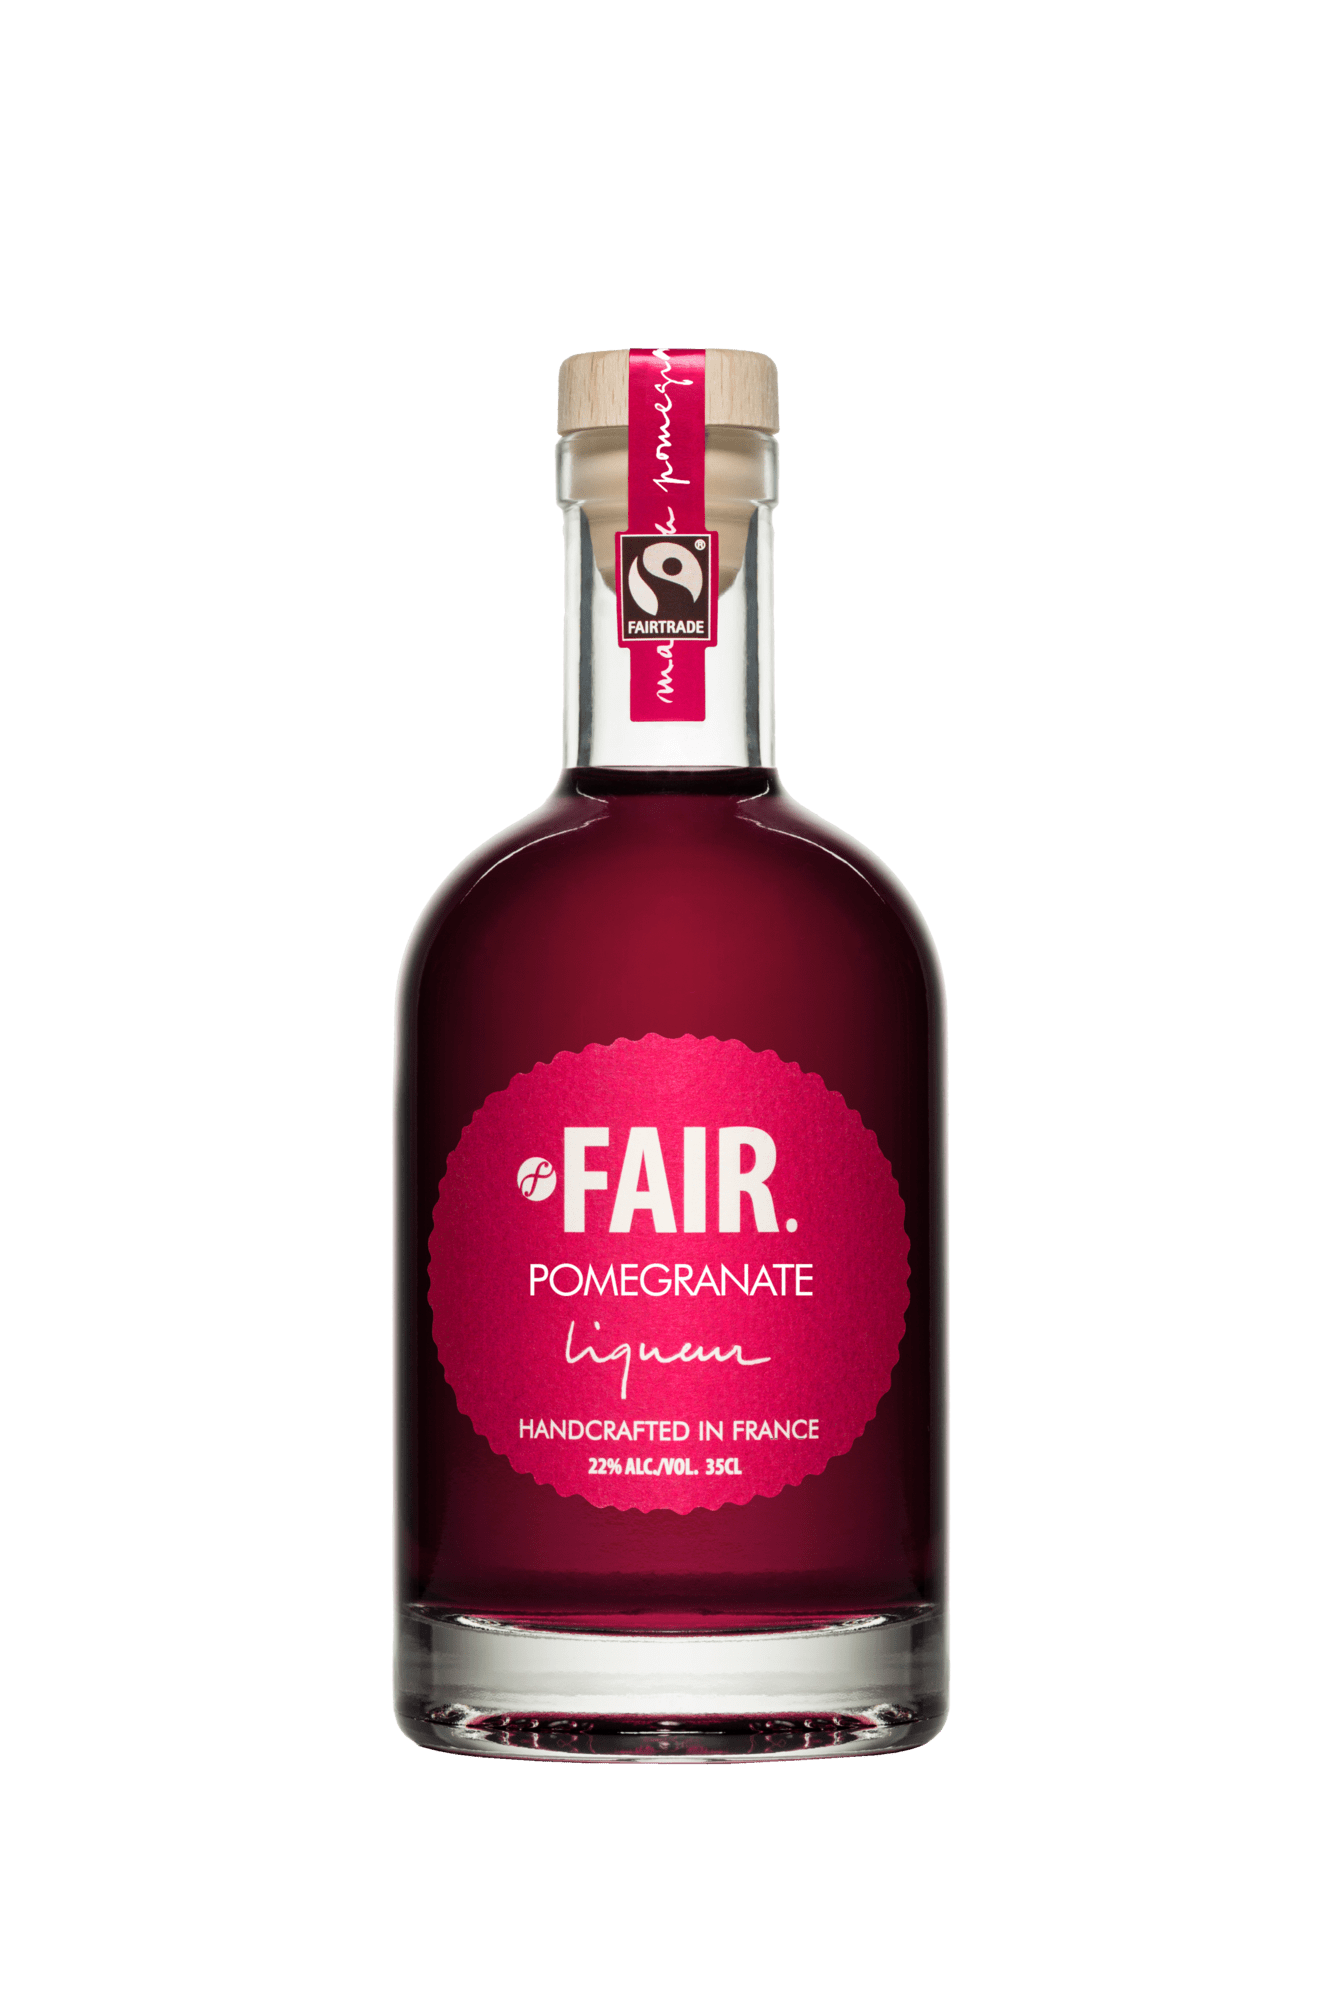 FAIR. Pomegranate Liqueur